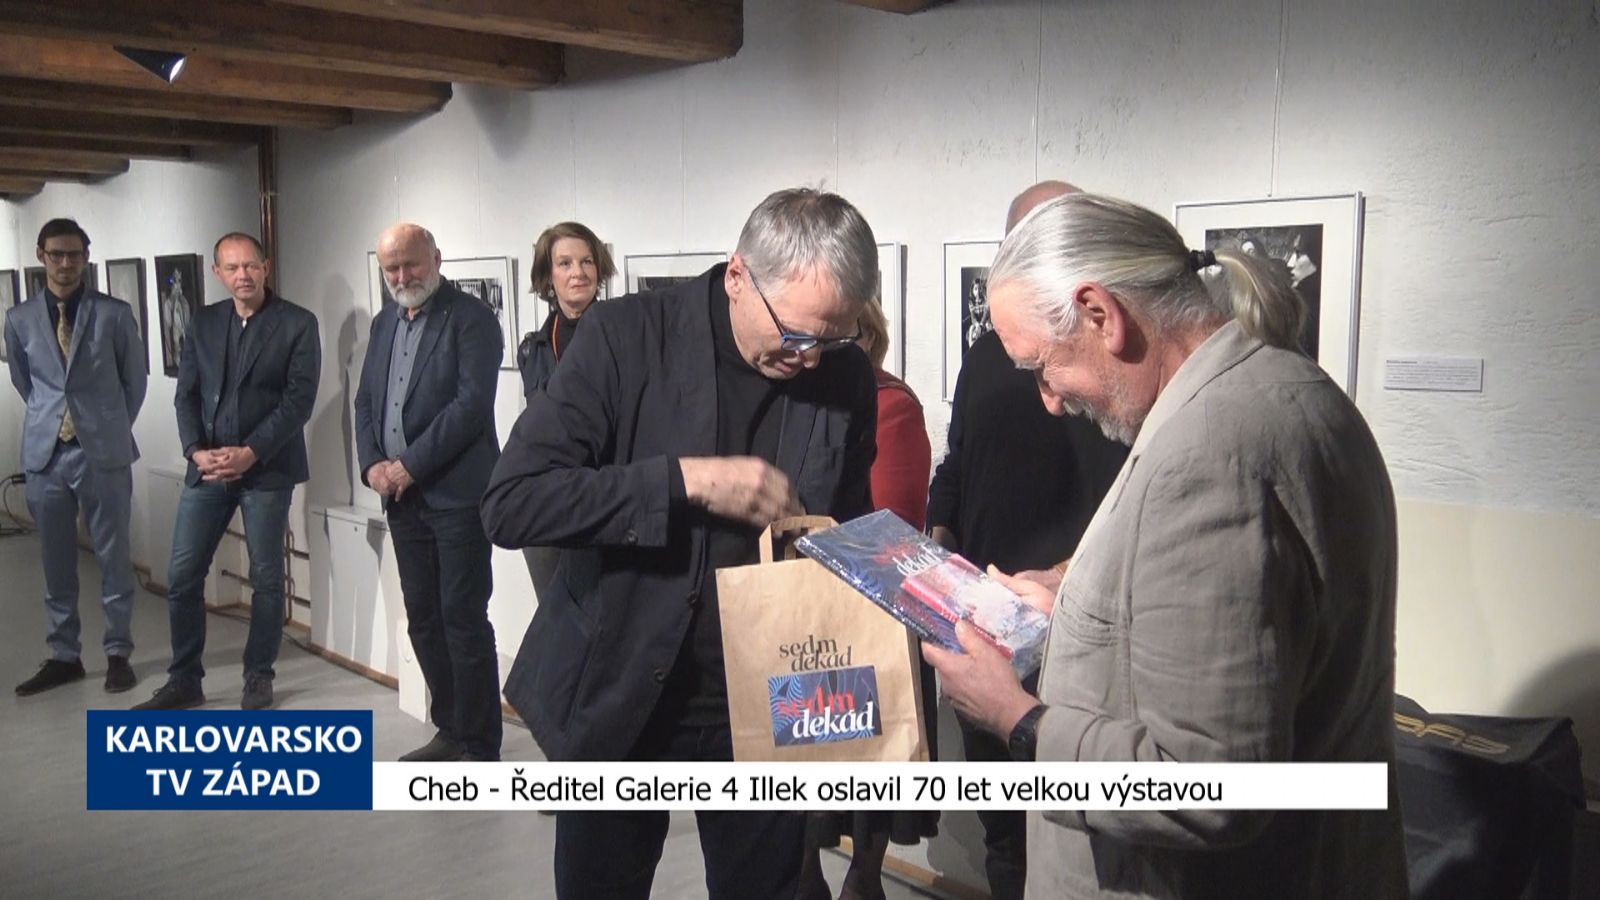 Cheb: Ředitel Galerie 4 Illek oslavil 70 let velkou výstavou (TV Západ)